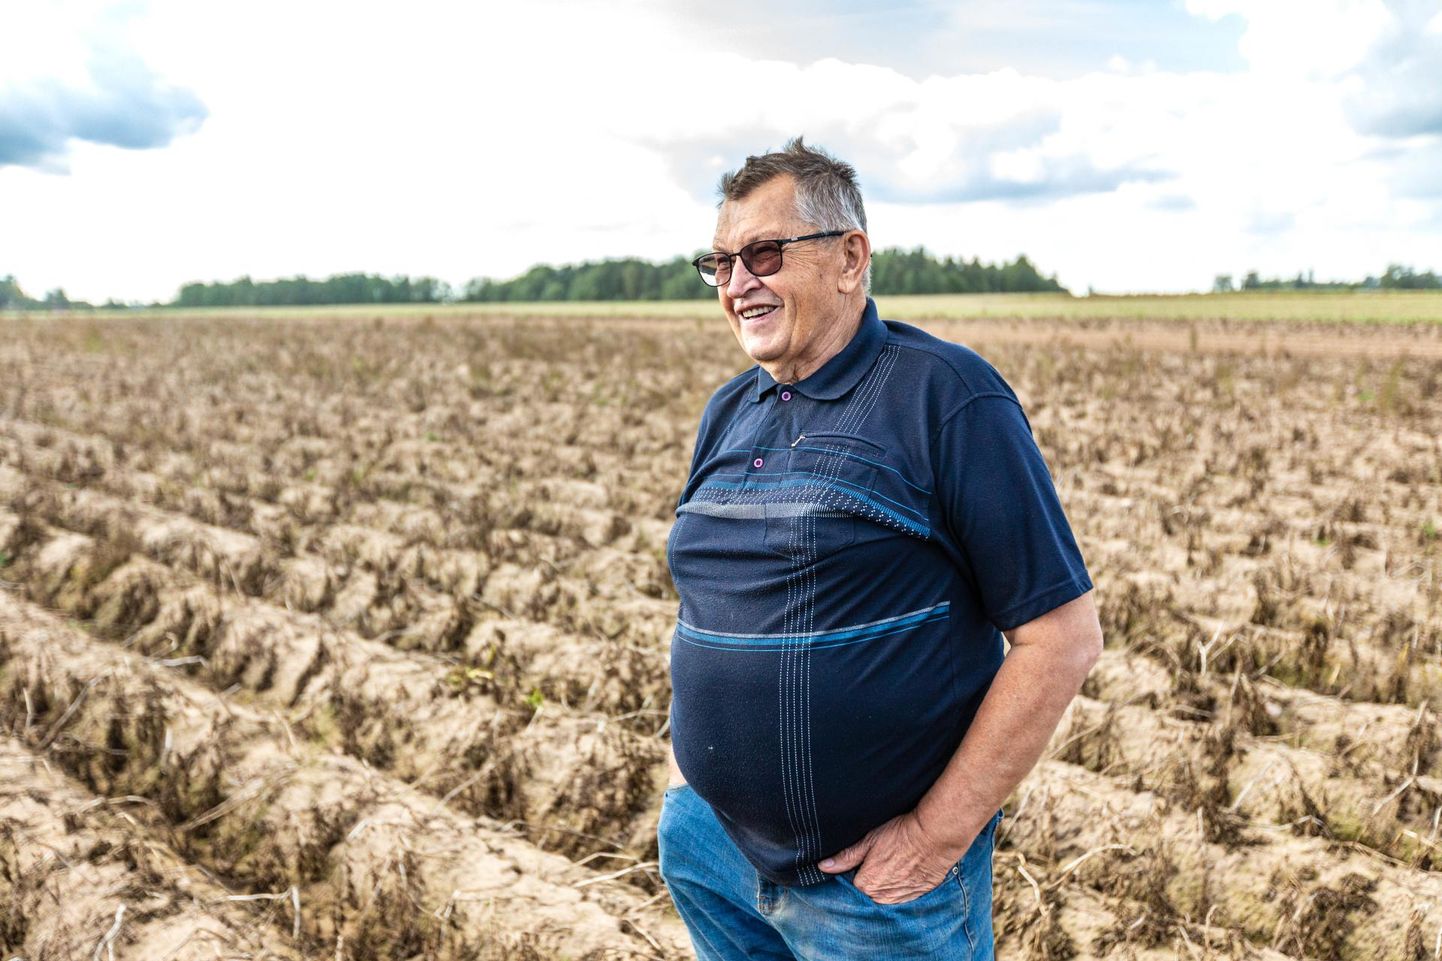 Põllumehed peavad praeguseid kartuli kokkuostuhindu naeruväärseks. 105 hektaril kartuleid kasvatav Jaagumäe talu peremees Mart Timmi kahtleb samuti, kas kümnest sendist väiksema kilohinnaga toodang suudetakse üldse ära müüa ja sellel tööl ka mingi majanduslik mõte on.